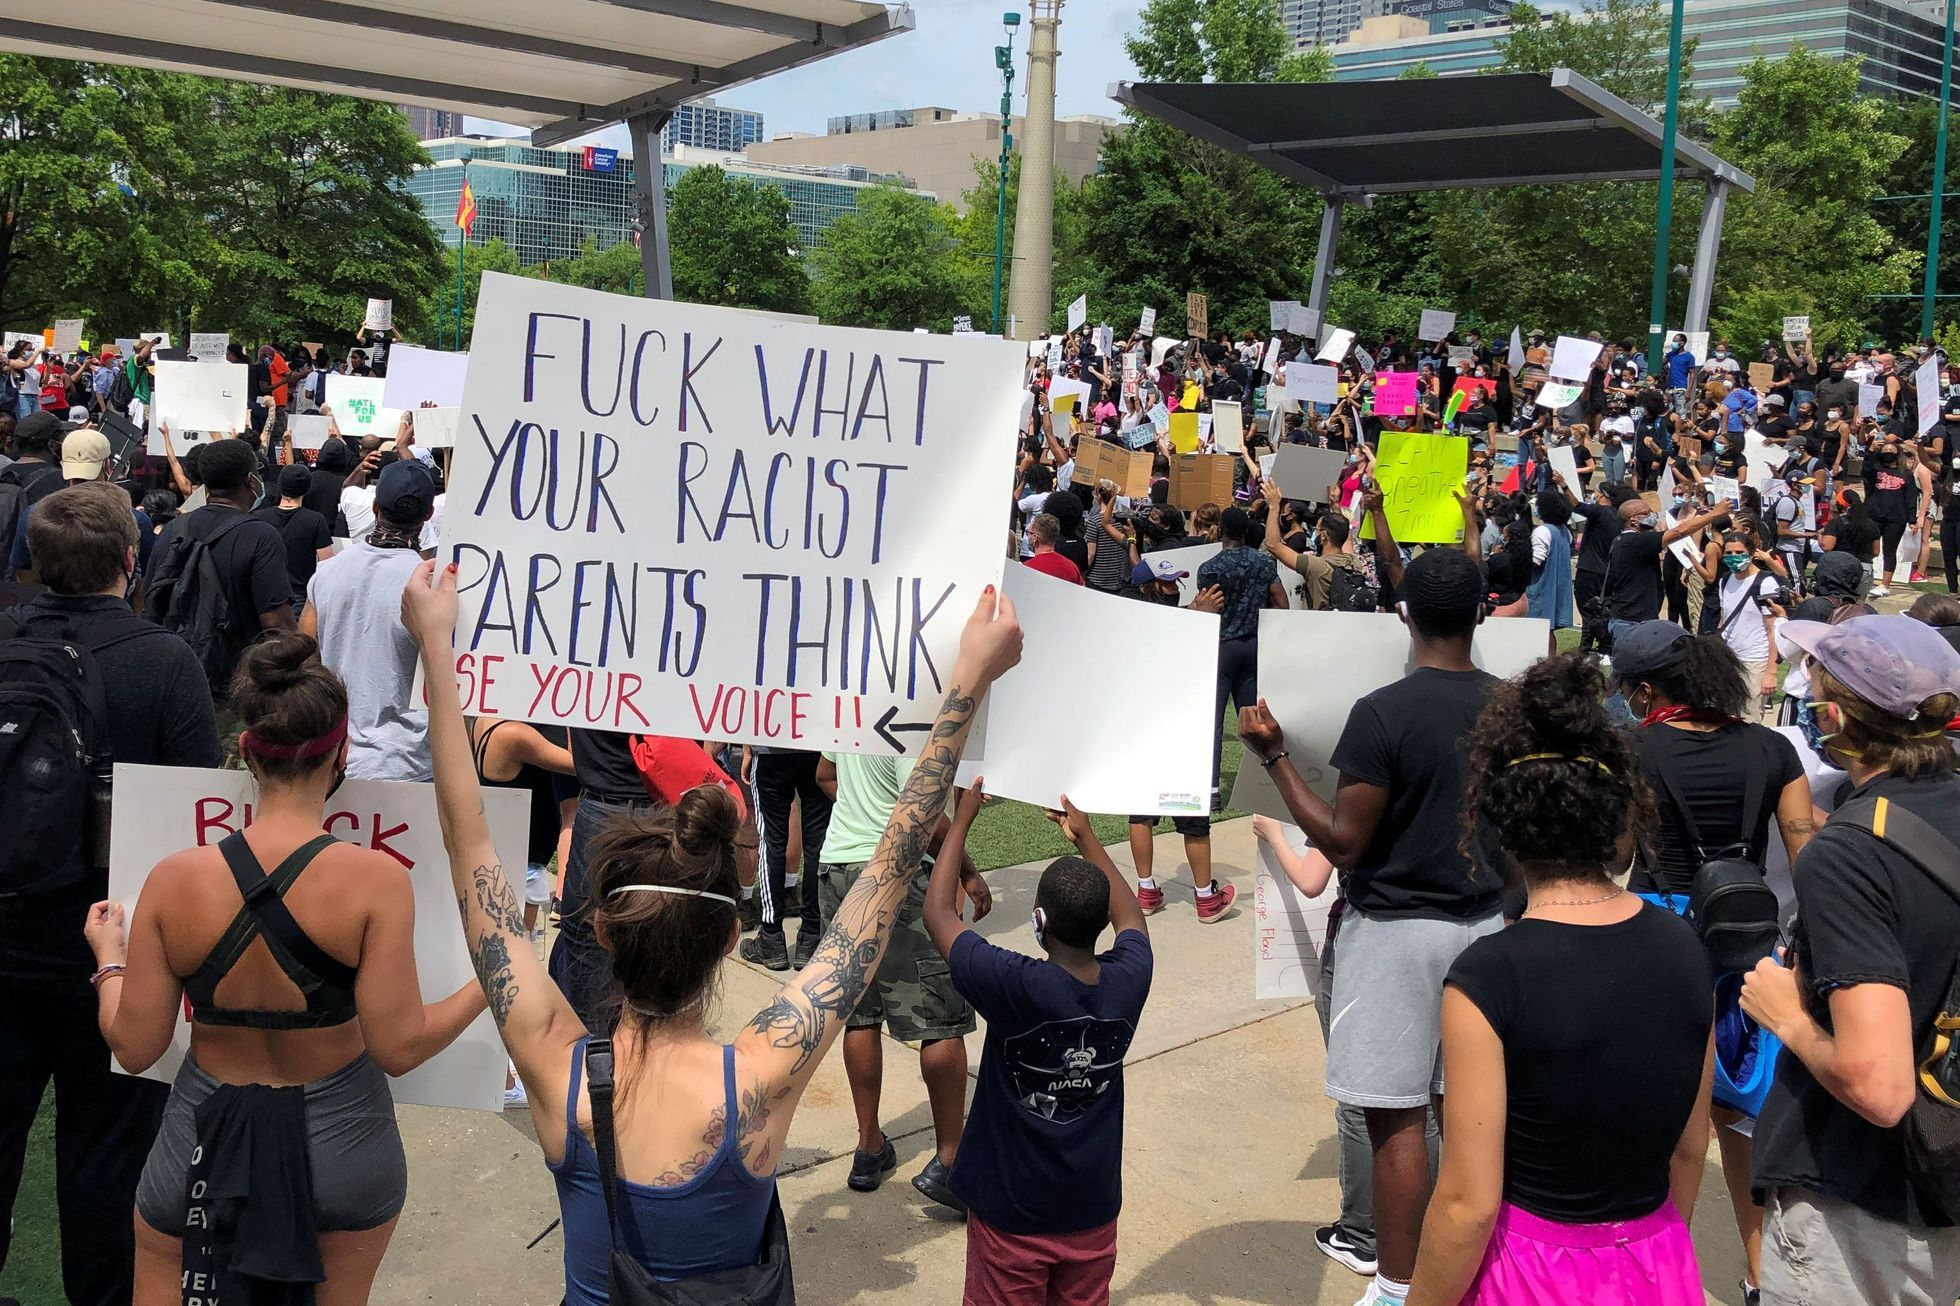 Protesty v USA kvůli smrti černocha George Floyda